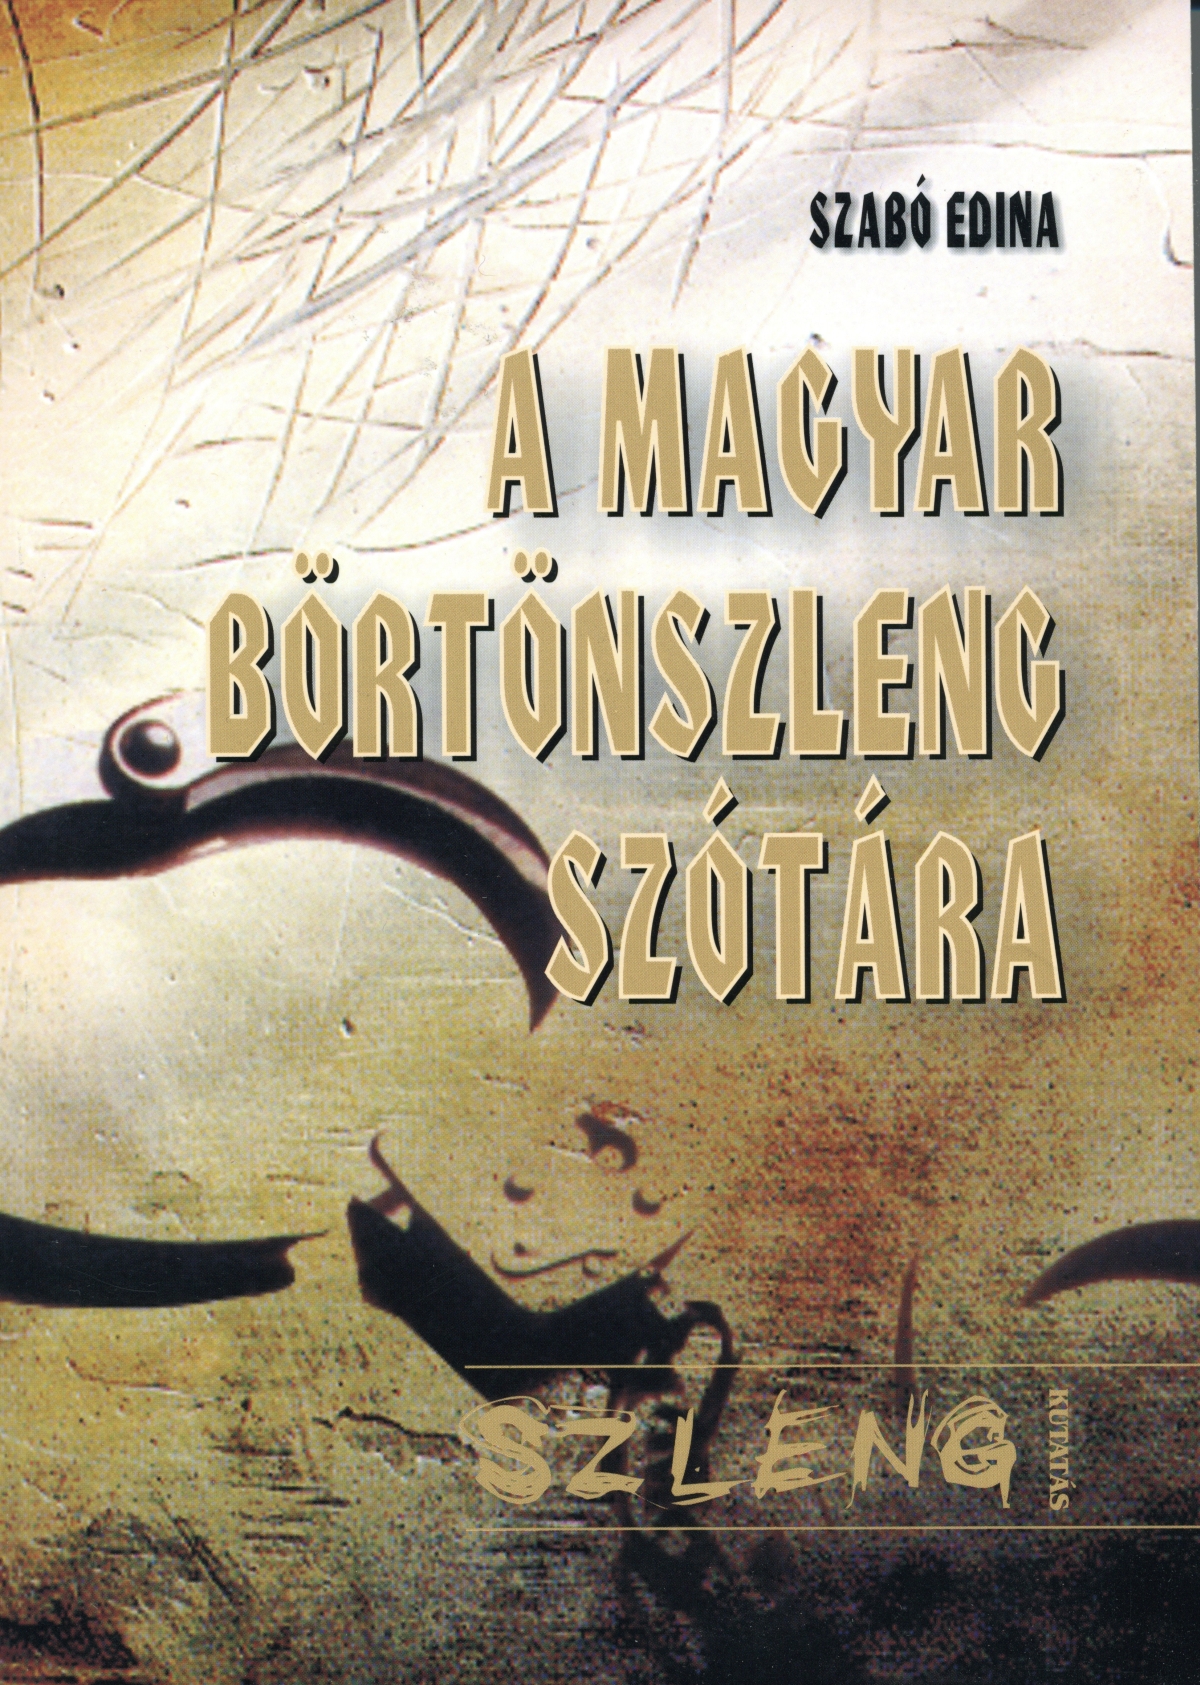 A magyar börtönszleng szótára, Szabó Edina, Kossuth Egyetemi Kiadó, Debrecen, 2008.